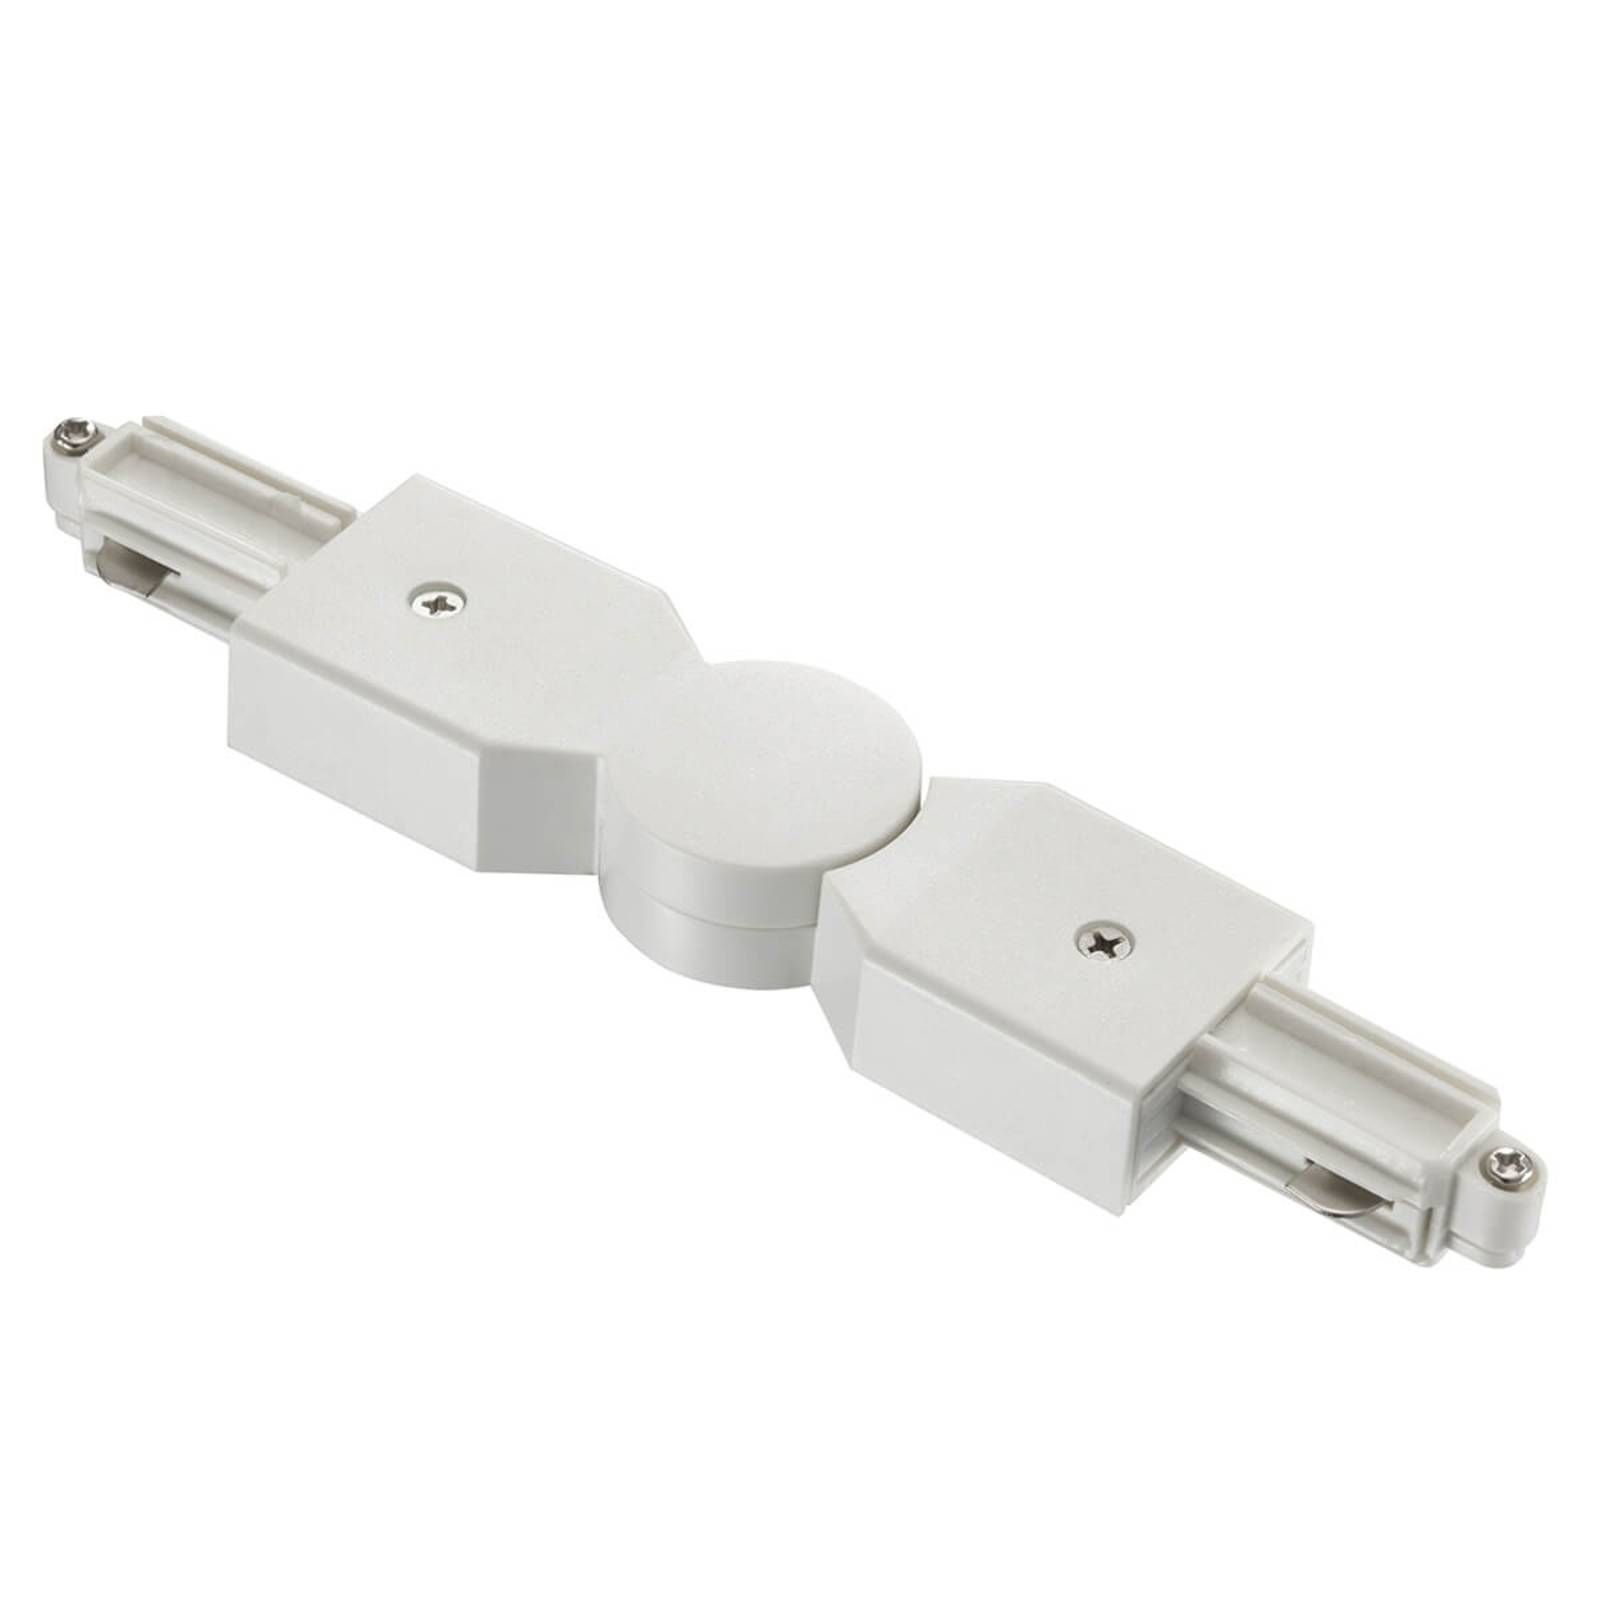 Nordlux Rohový konektor pre koľajnicový systém Link, biely, PVC, P: 12 cm, L: 3.5 cm, K: 1.8cm